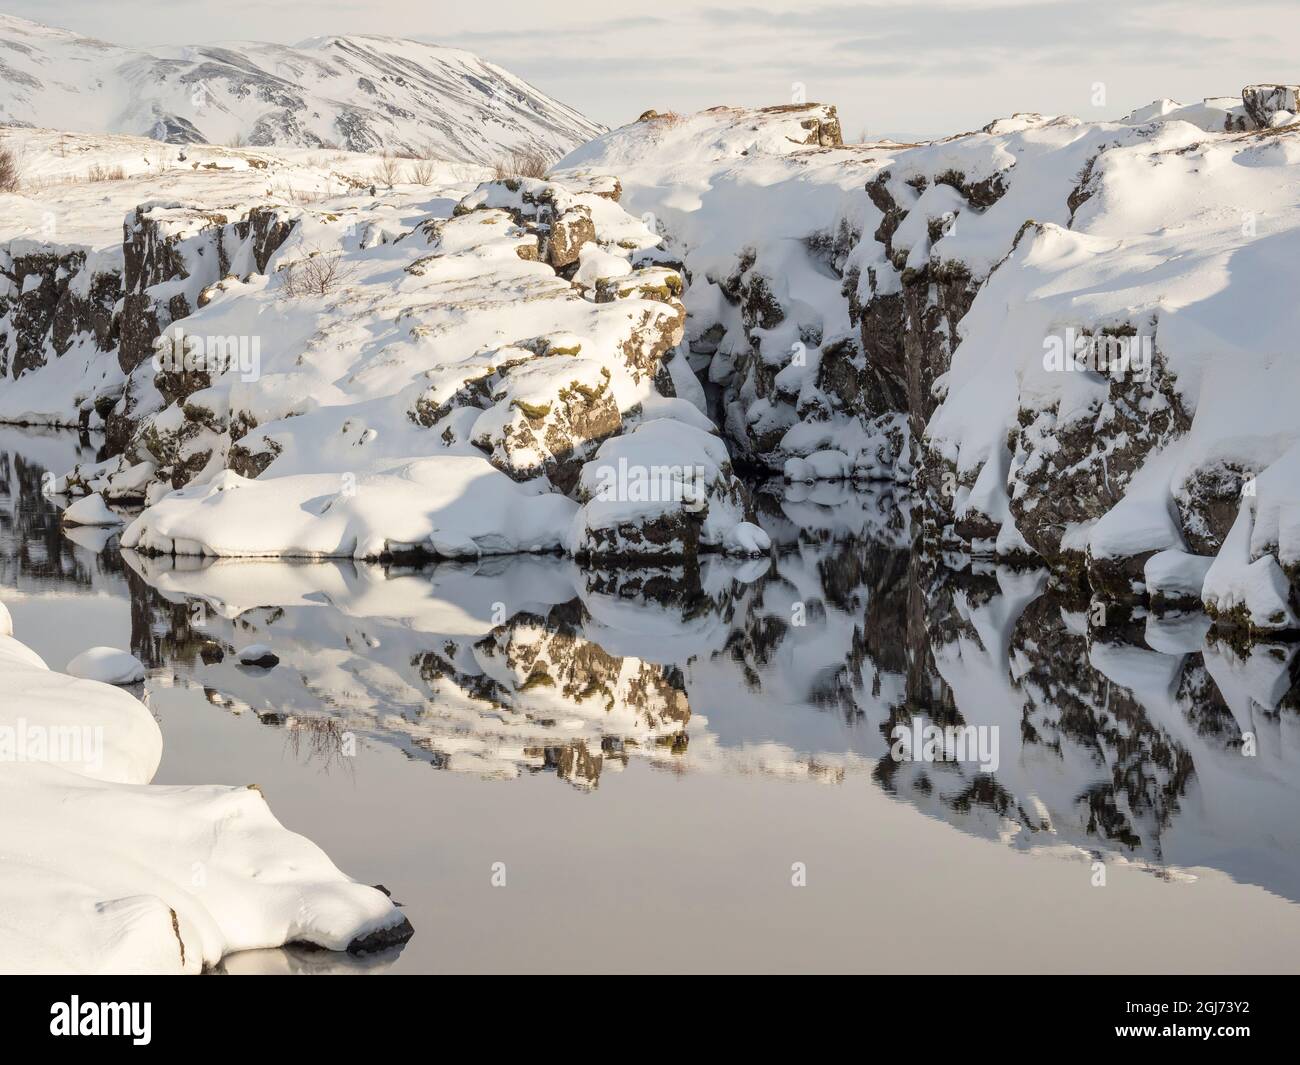 Gorge de Flosagja. Parc national de Thingvellir, site classé au patrimoine mondial de l'UNESCO, recouvert de neige fraîche en Islande. Banque D'Images